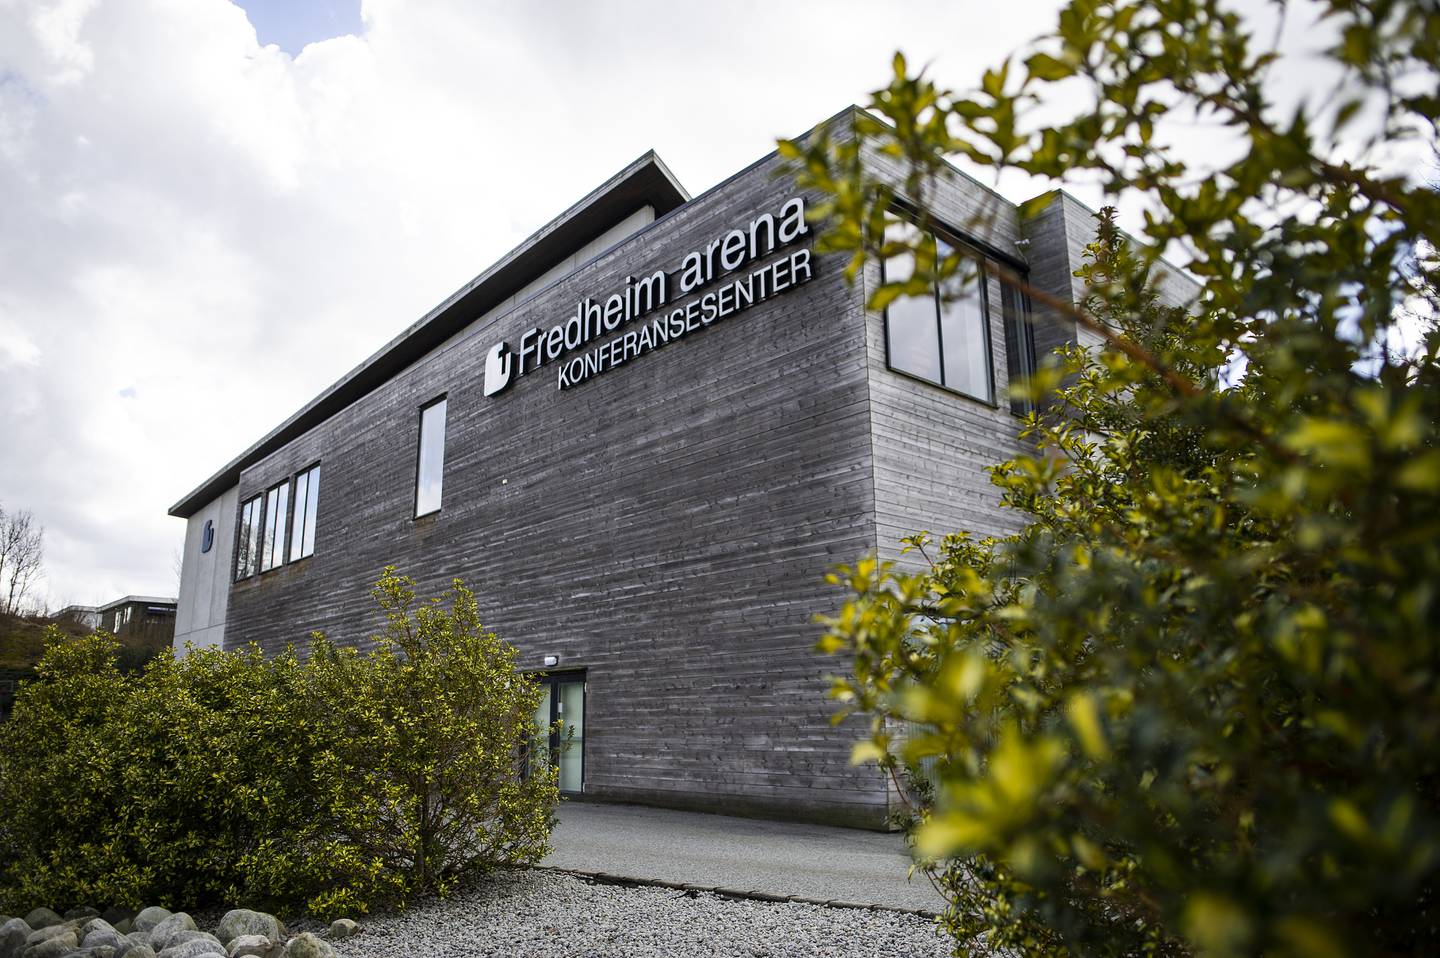 Fredheim Arena er en forsamling tilknyttet Indremisjonsforbundet. De holder til i Sandnes i Rogaland.

bedehus bedehusforsamling